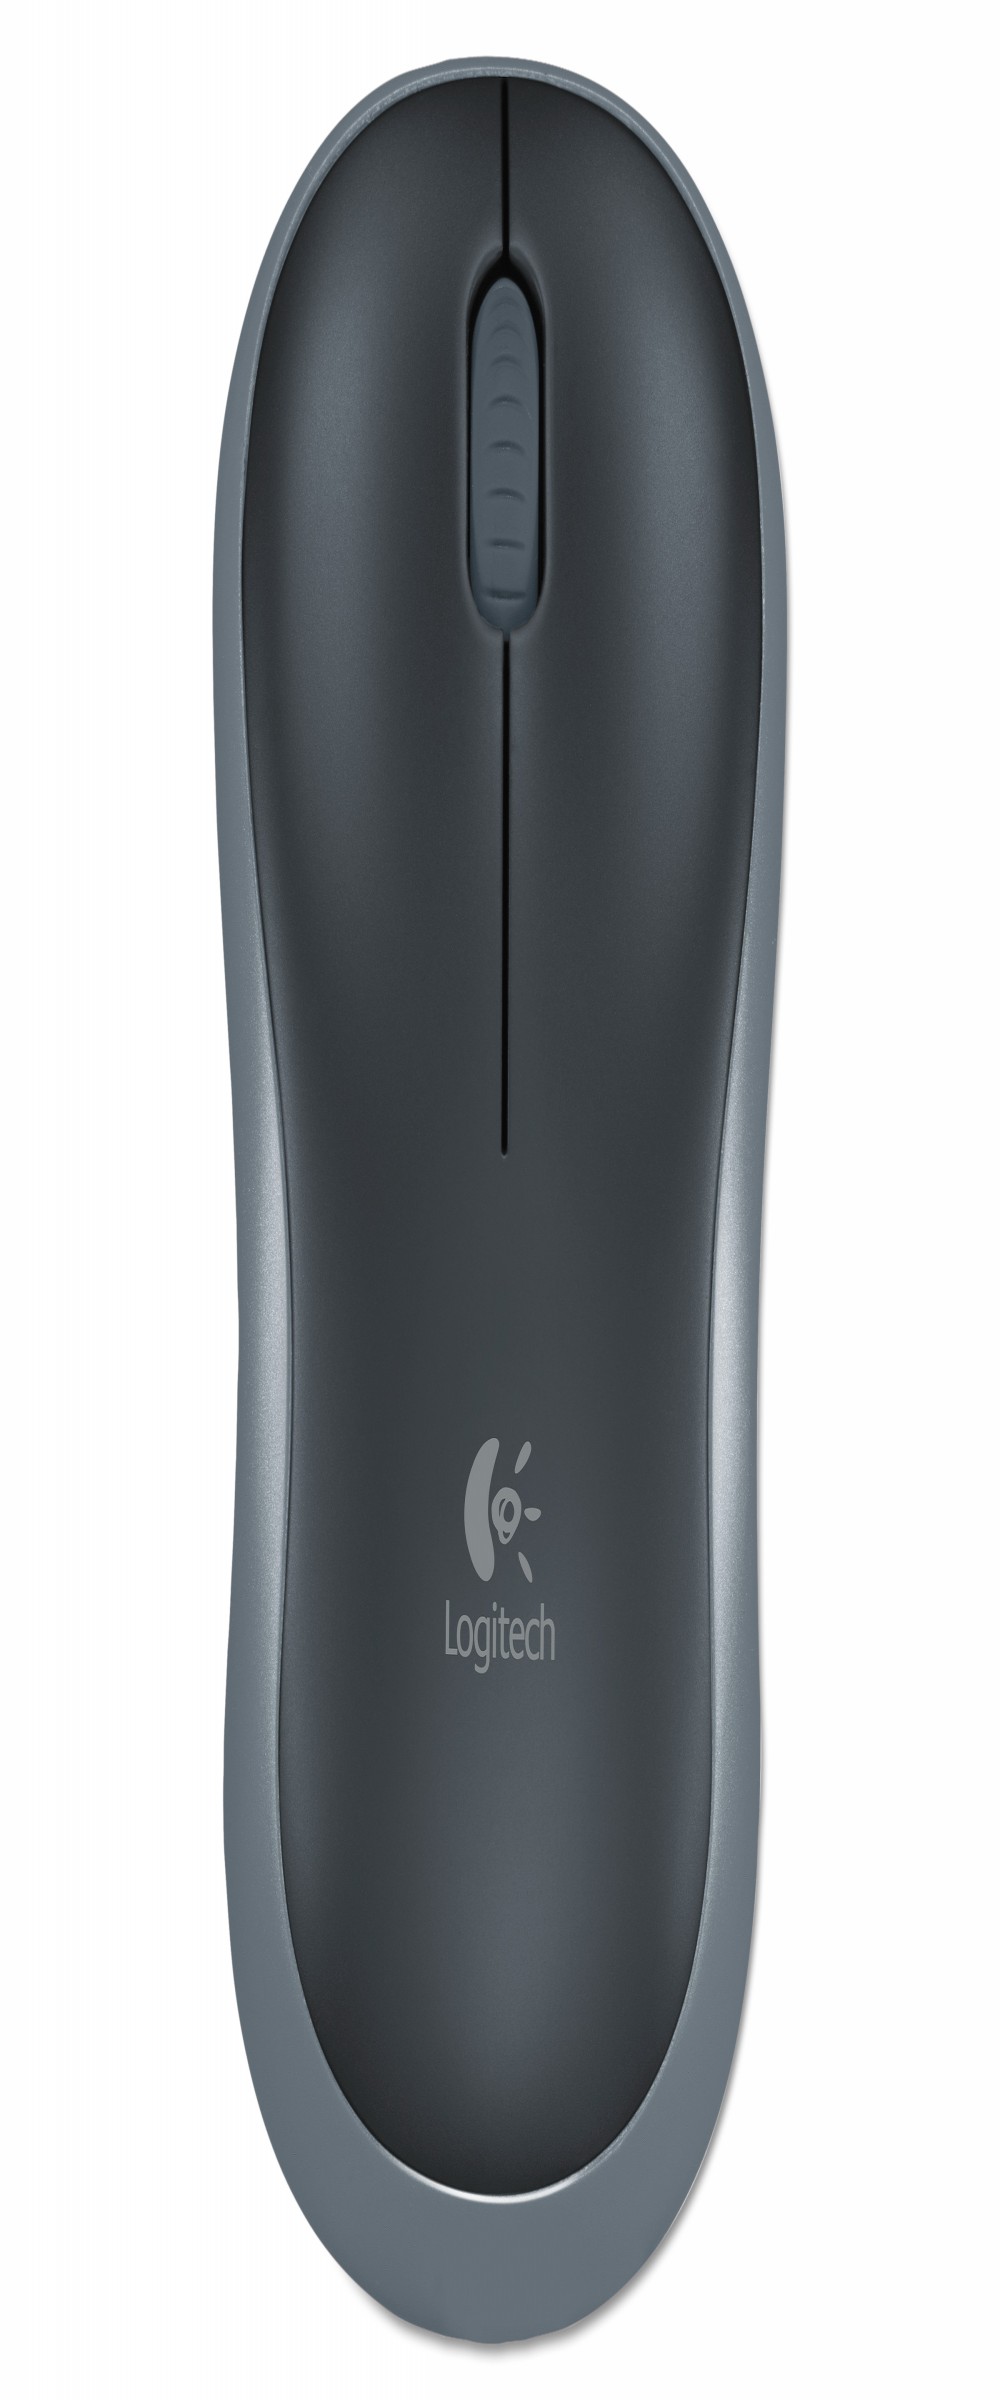 Mouse Logitech M185 Wireless 910-002225 2.4GHz Preto Cinza 